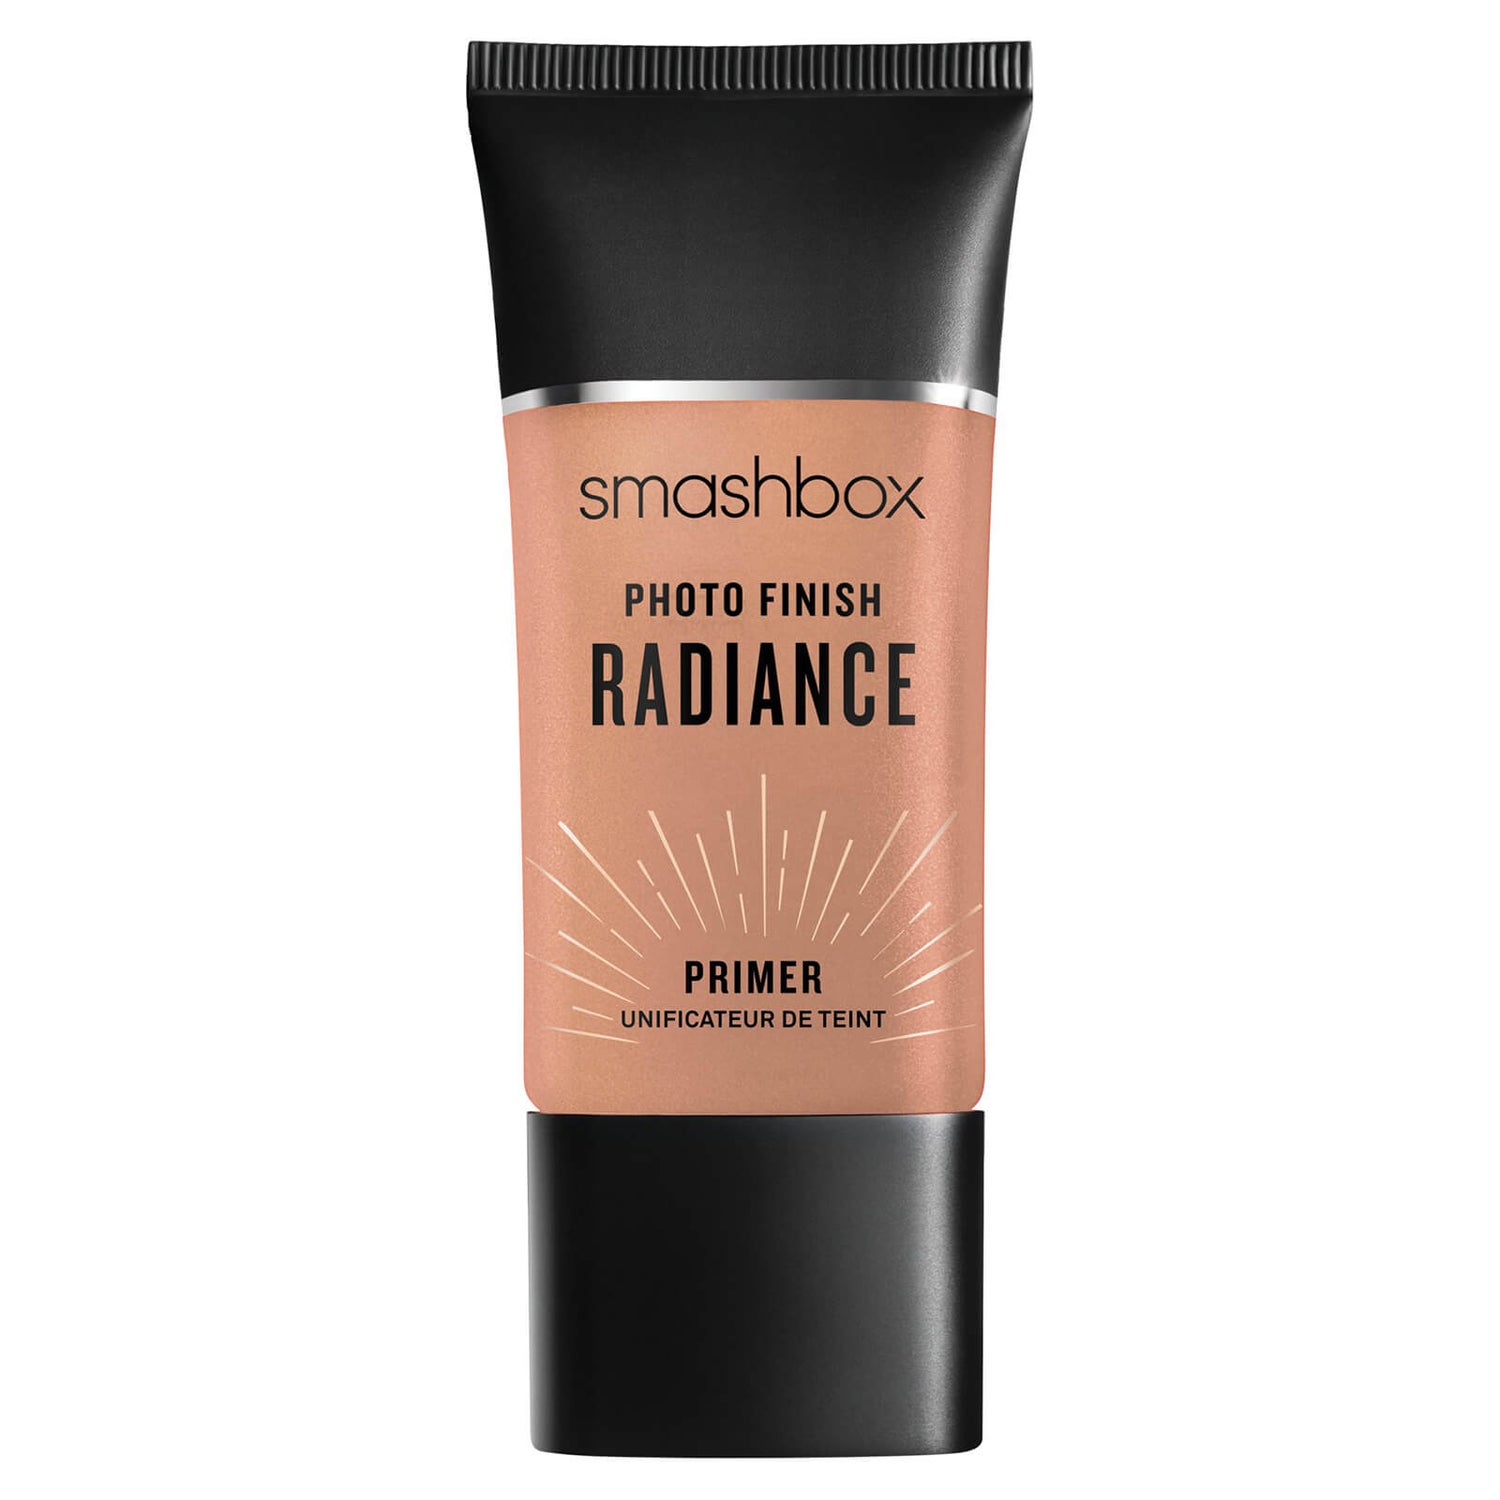 Smashbox Photo Finish Radiance Foundation Primer with Hyaluronic Acid 30ml